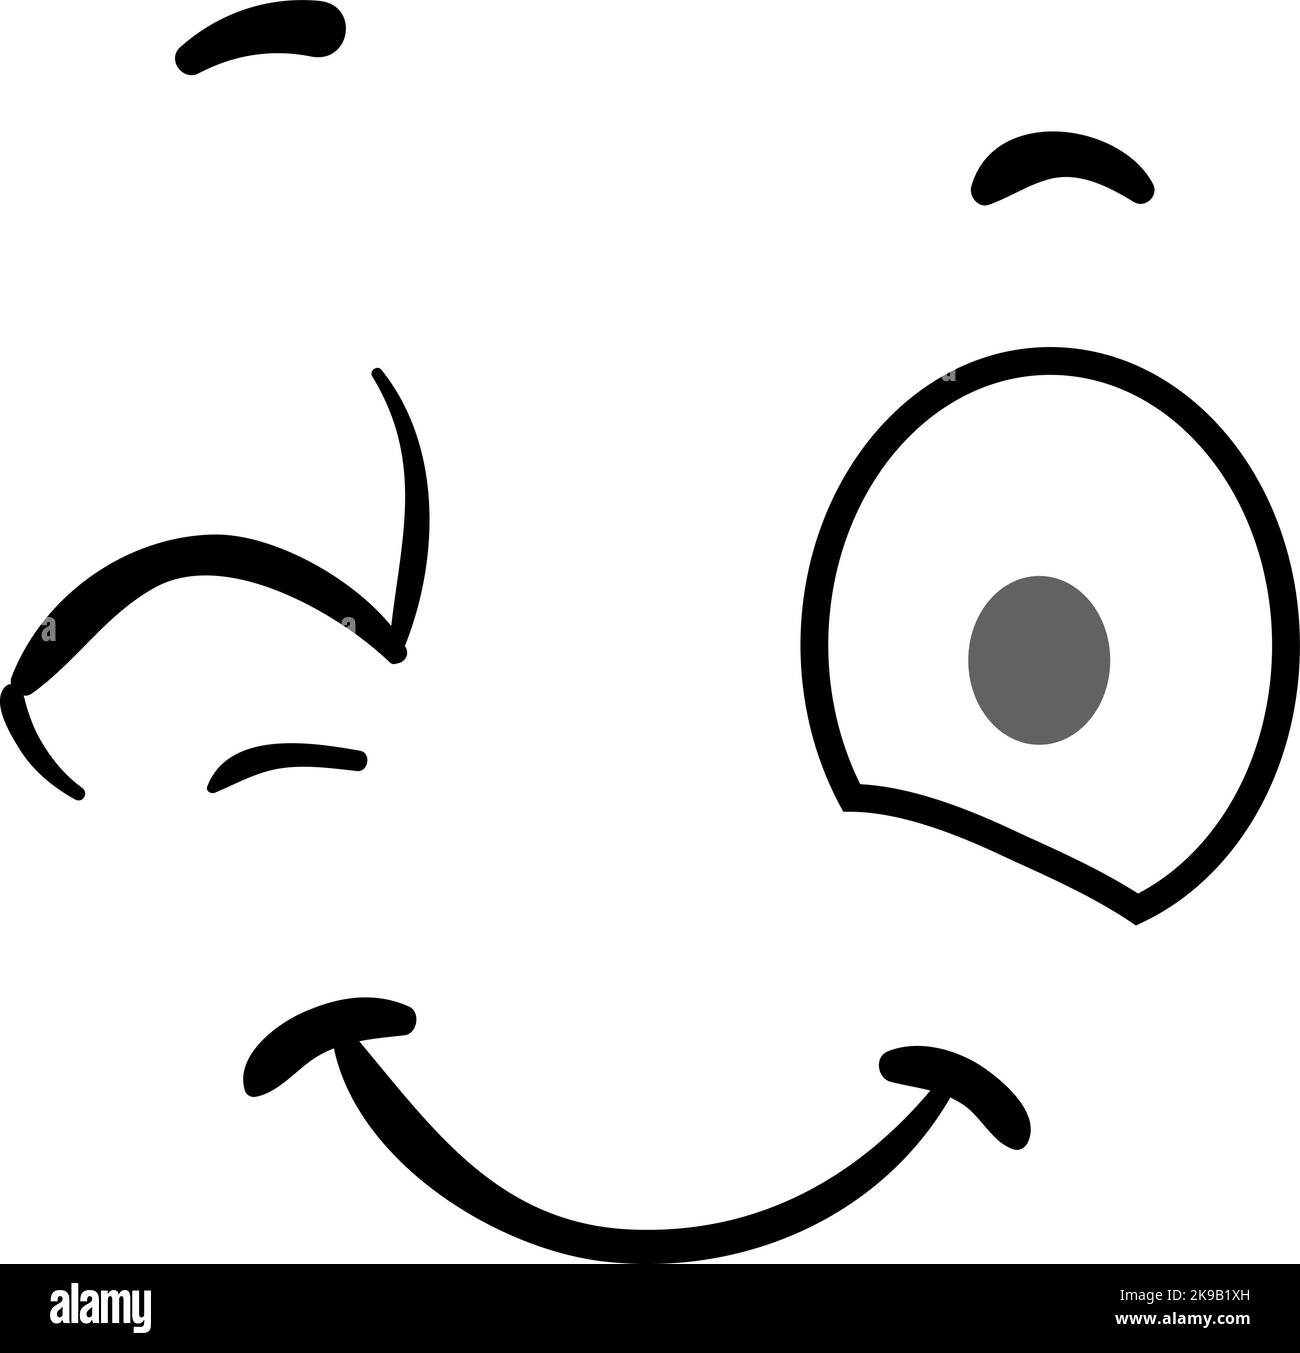 Augenzwinkern Cartoon Gesichtsausdruck. Komische Emotionen Stock Vektor